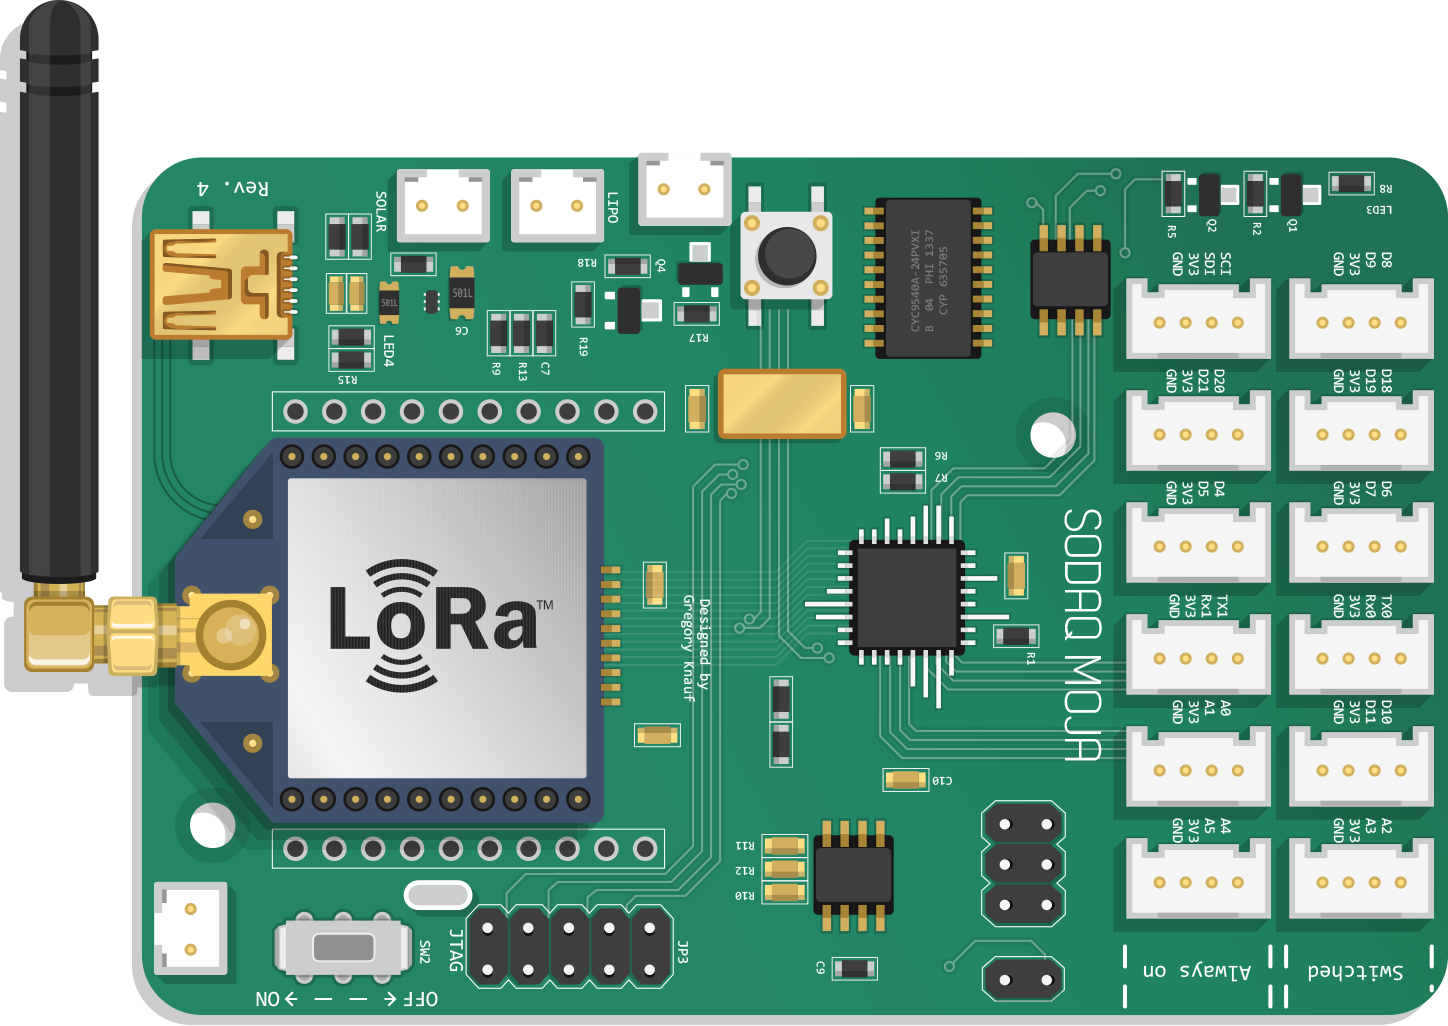 SODAQ Mbili with LoRa™ chip